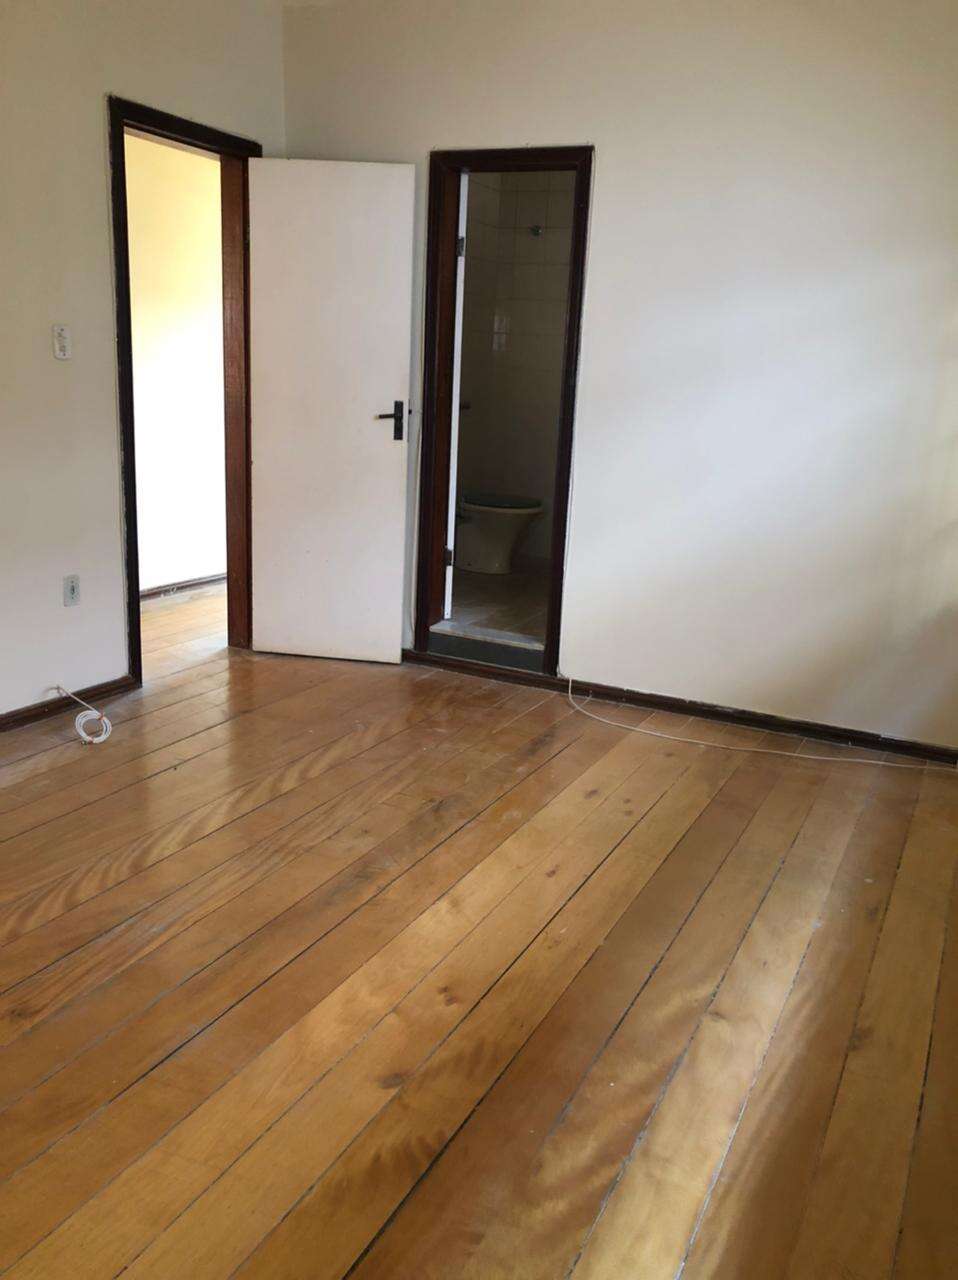 Apartamento 3 quartos à venda no Limoeiro: 1d5c68cf-7-whatsapp-image-2021-06-18-at-16.32.53.jpeg